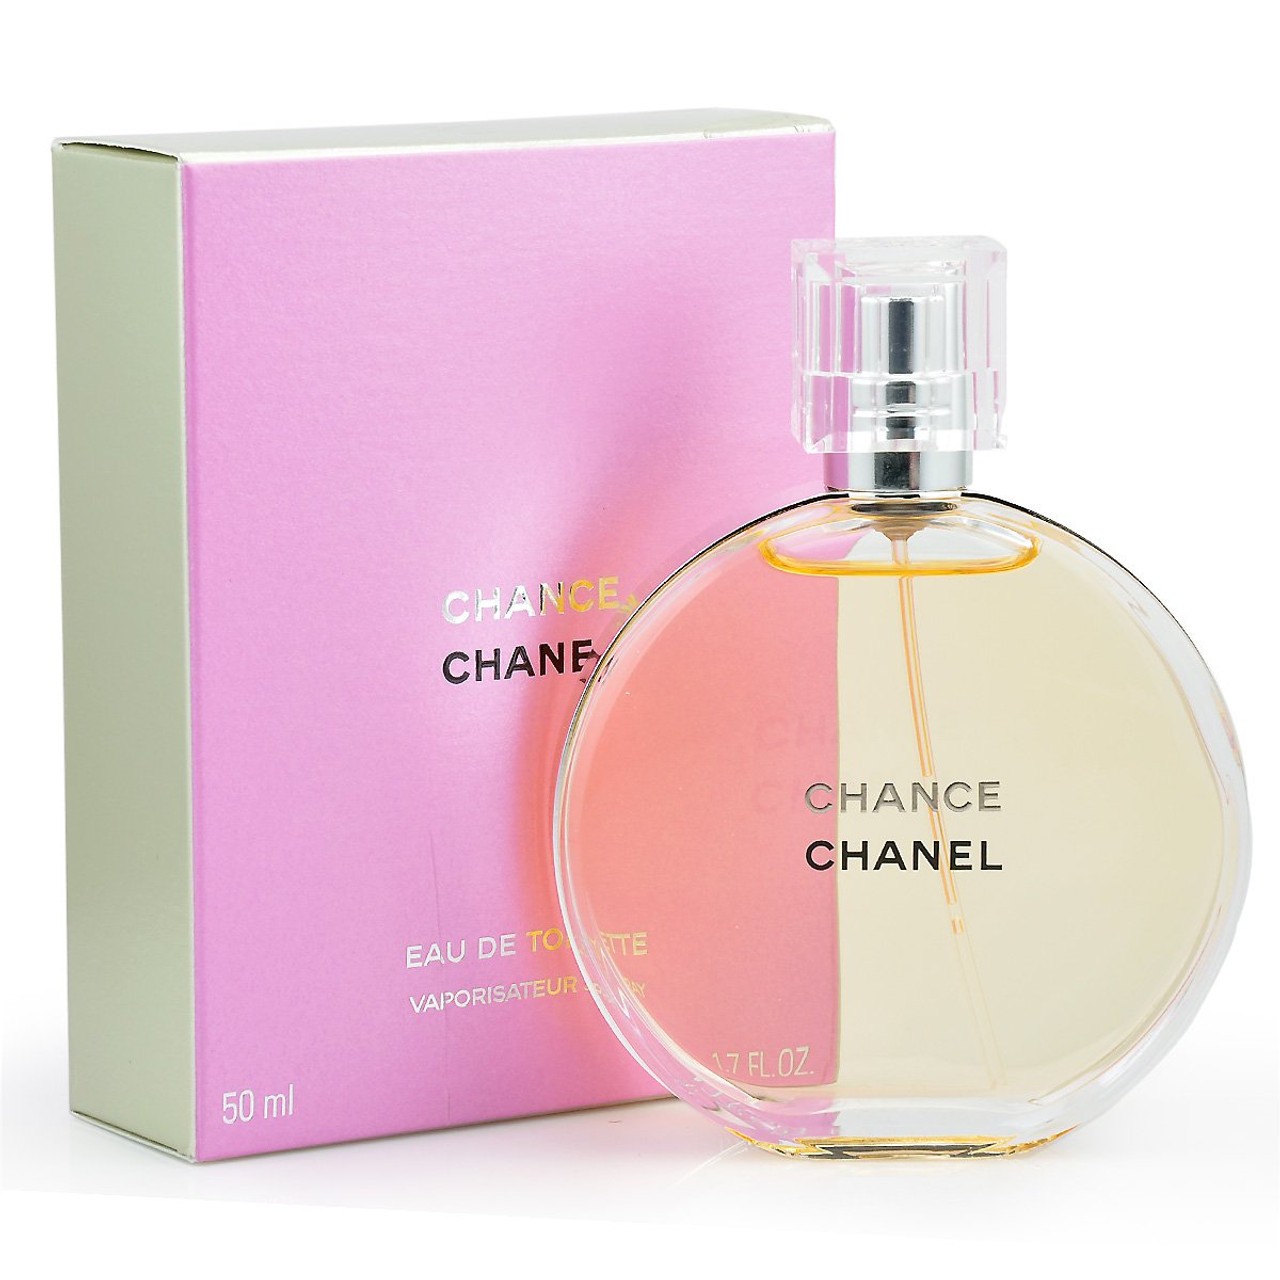 Chanel Chance Eau Tendre Eau de Parfum Chanel Chance Eau Tendre